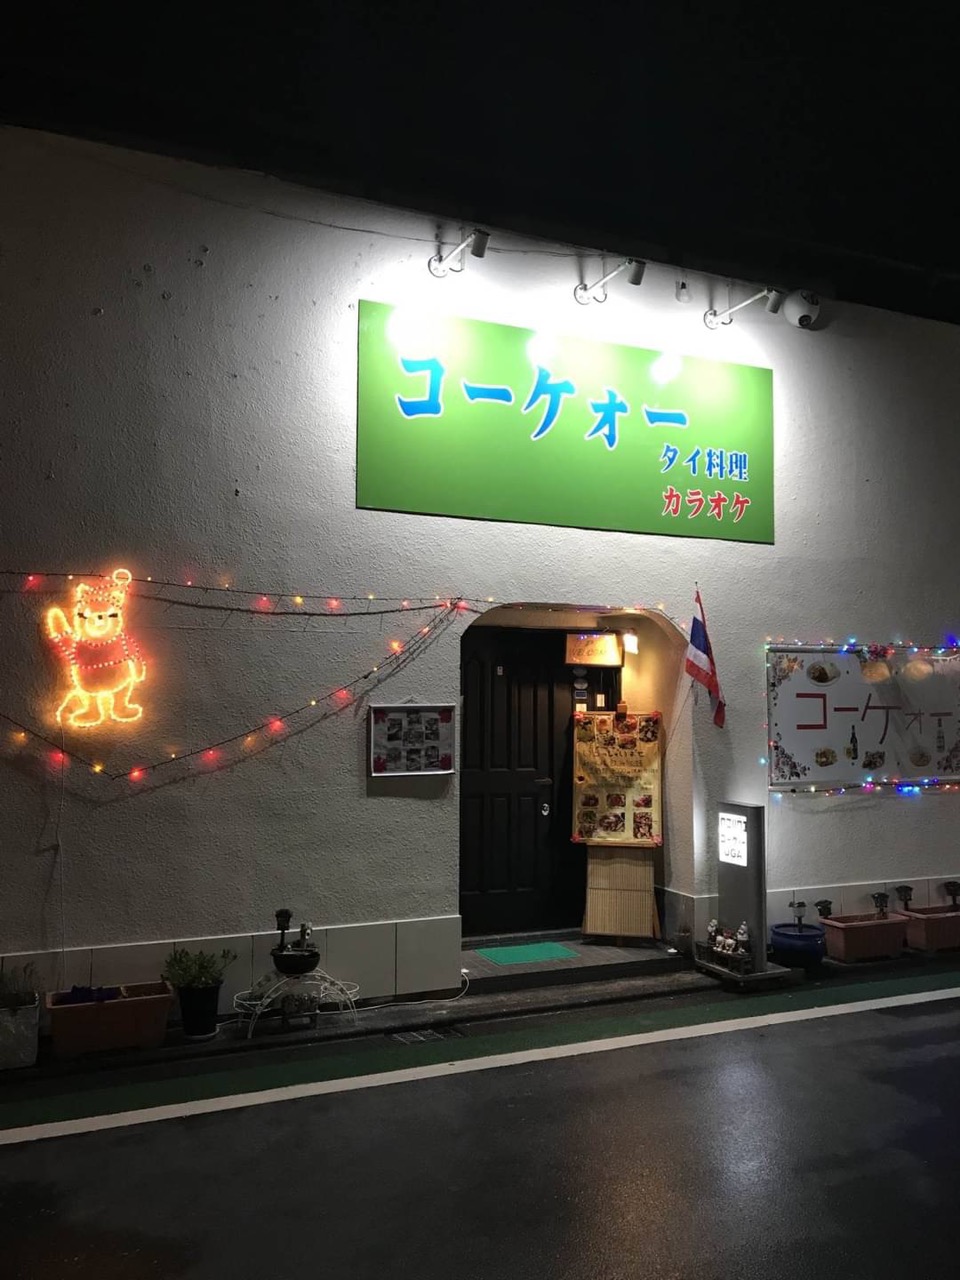 伊豆長岡温泉街の中央にあります。広くて多くの皆様が楽しめるお店になっています。